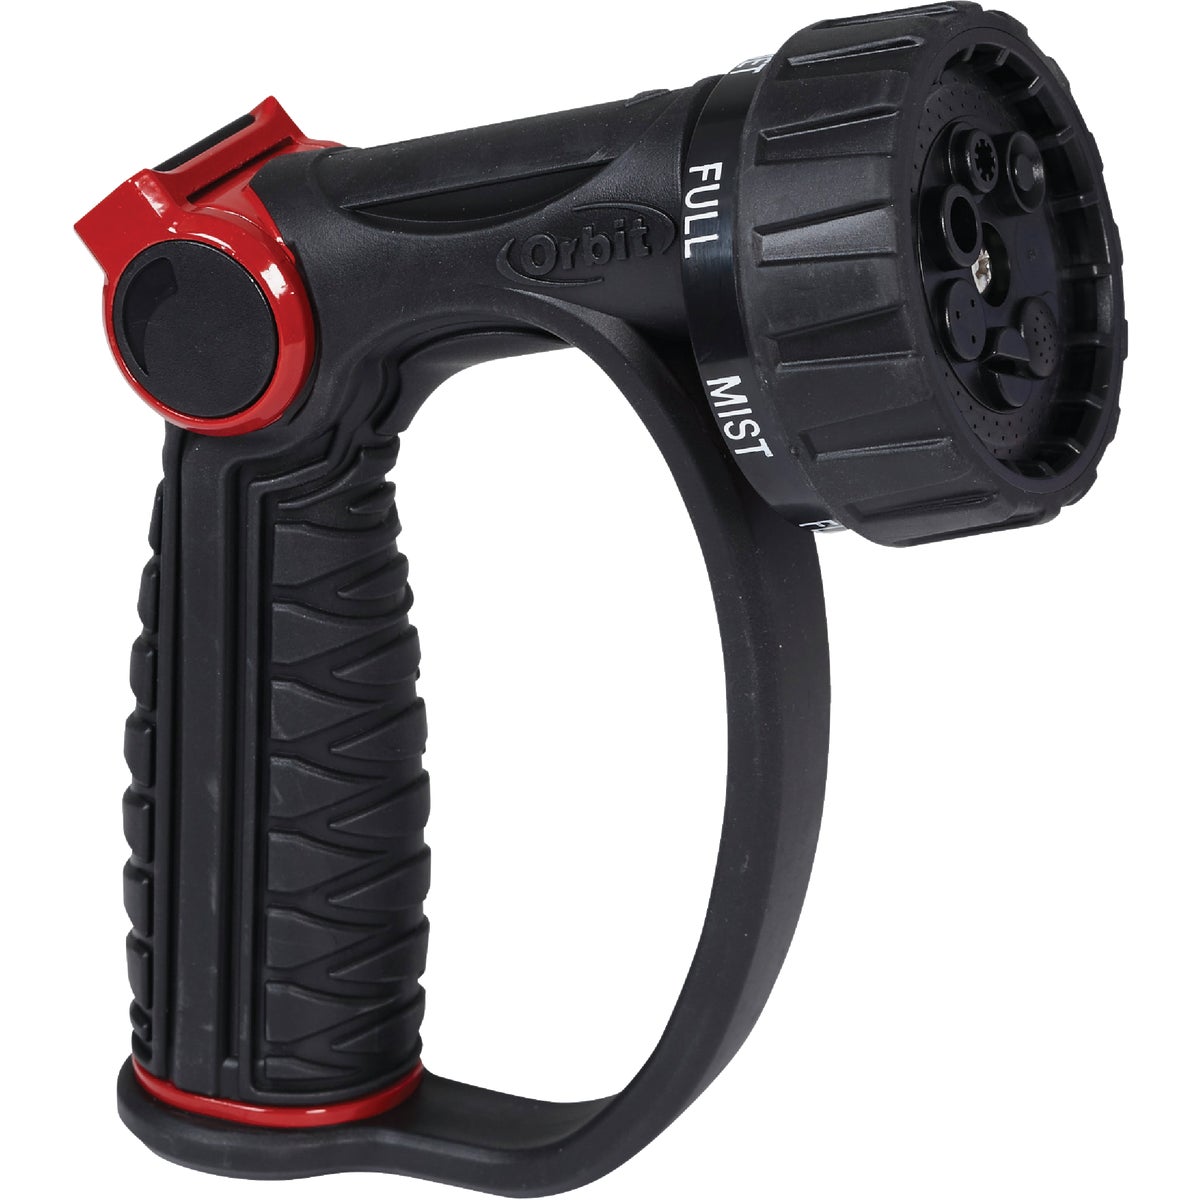 Item 705244, Thumb control, adjustable 7-pattern, D-grip nozzle.